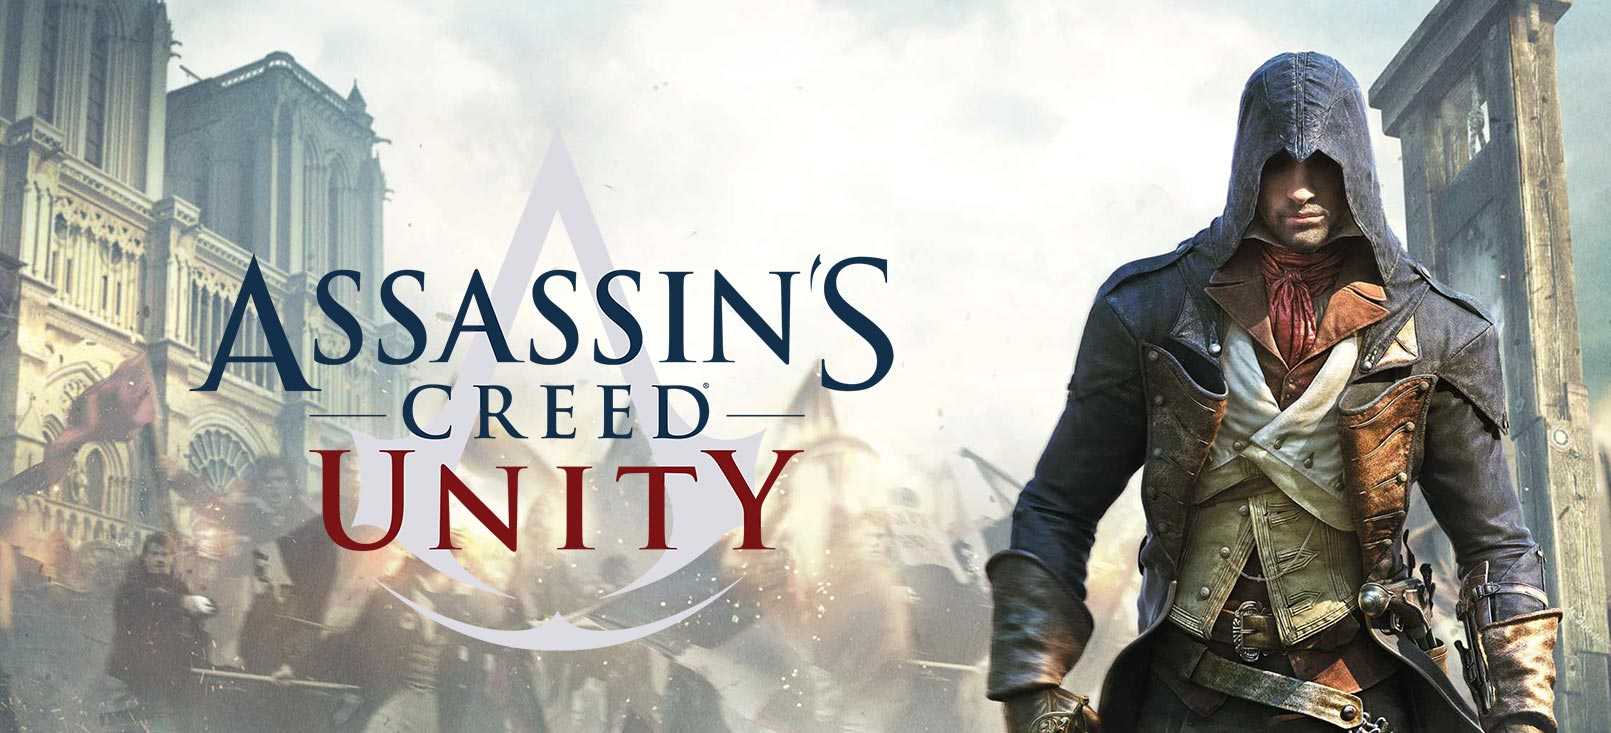 Assassins creed unity скачать торрент механики бесплатно на пк